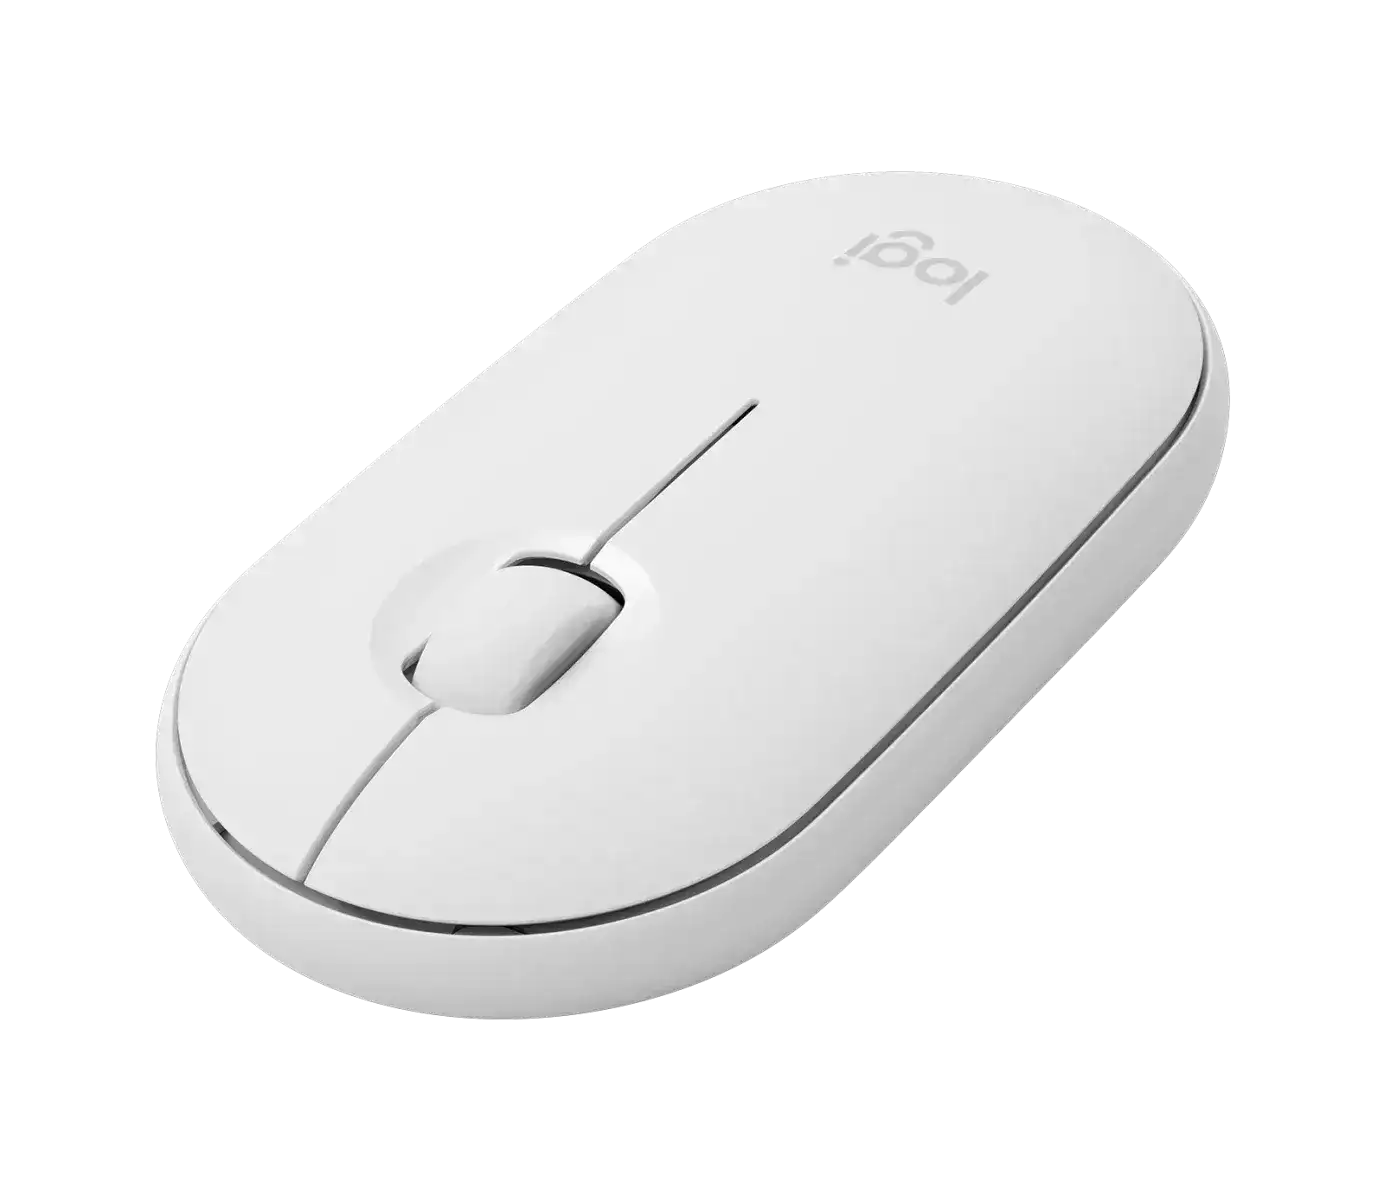 Logitech M350 Pebble Kablosuz Mouse Beyaz 910-005716